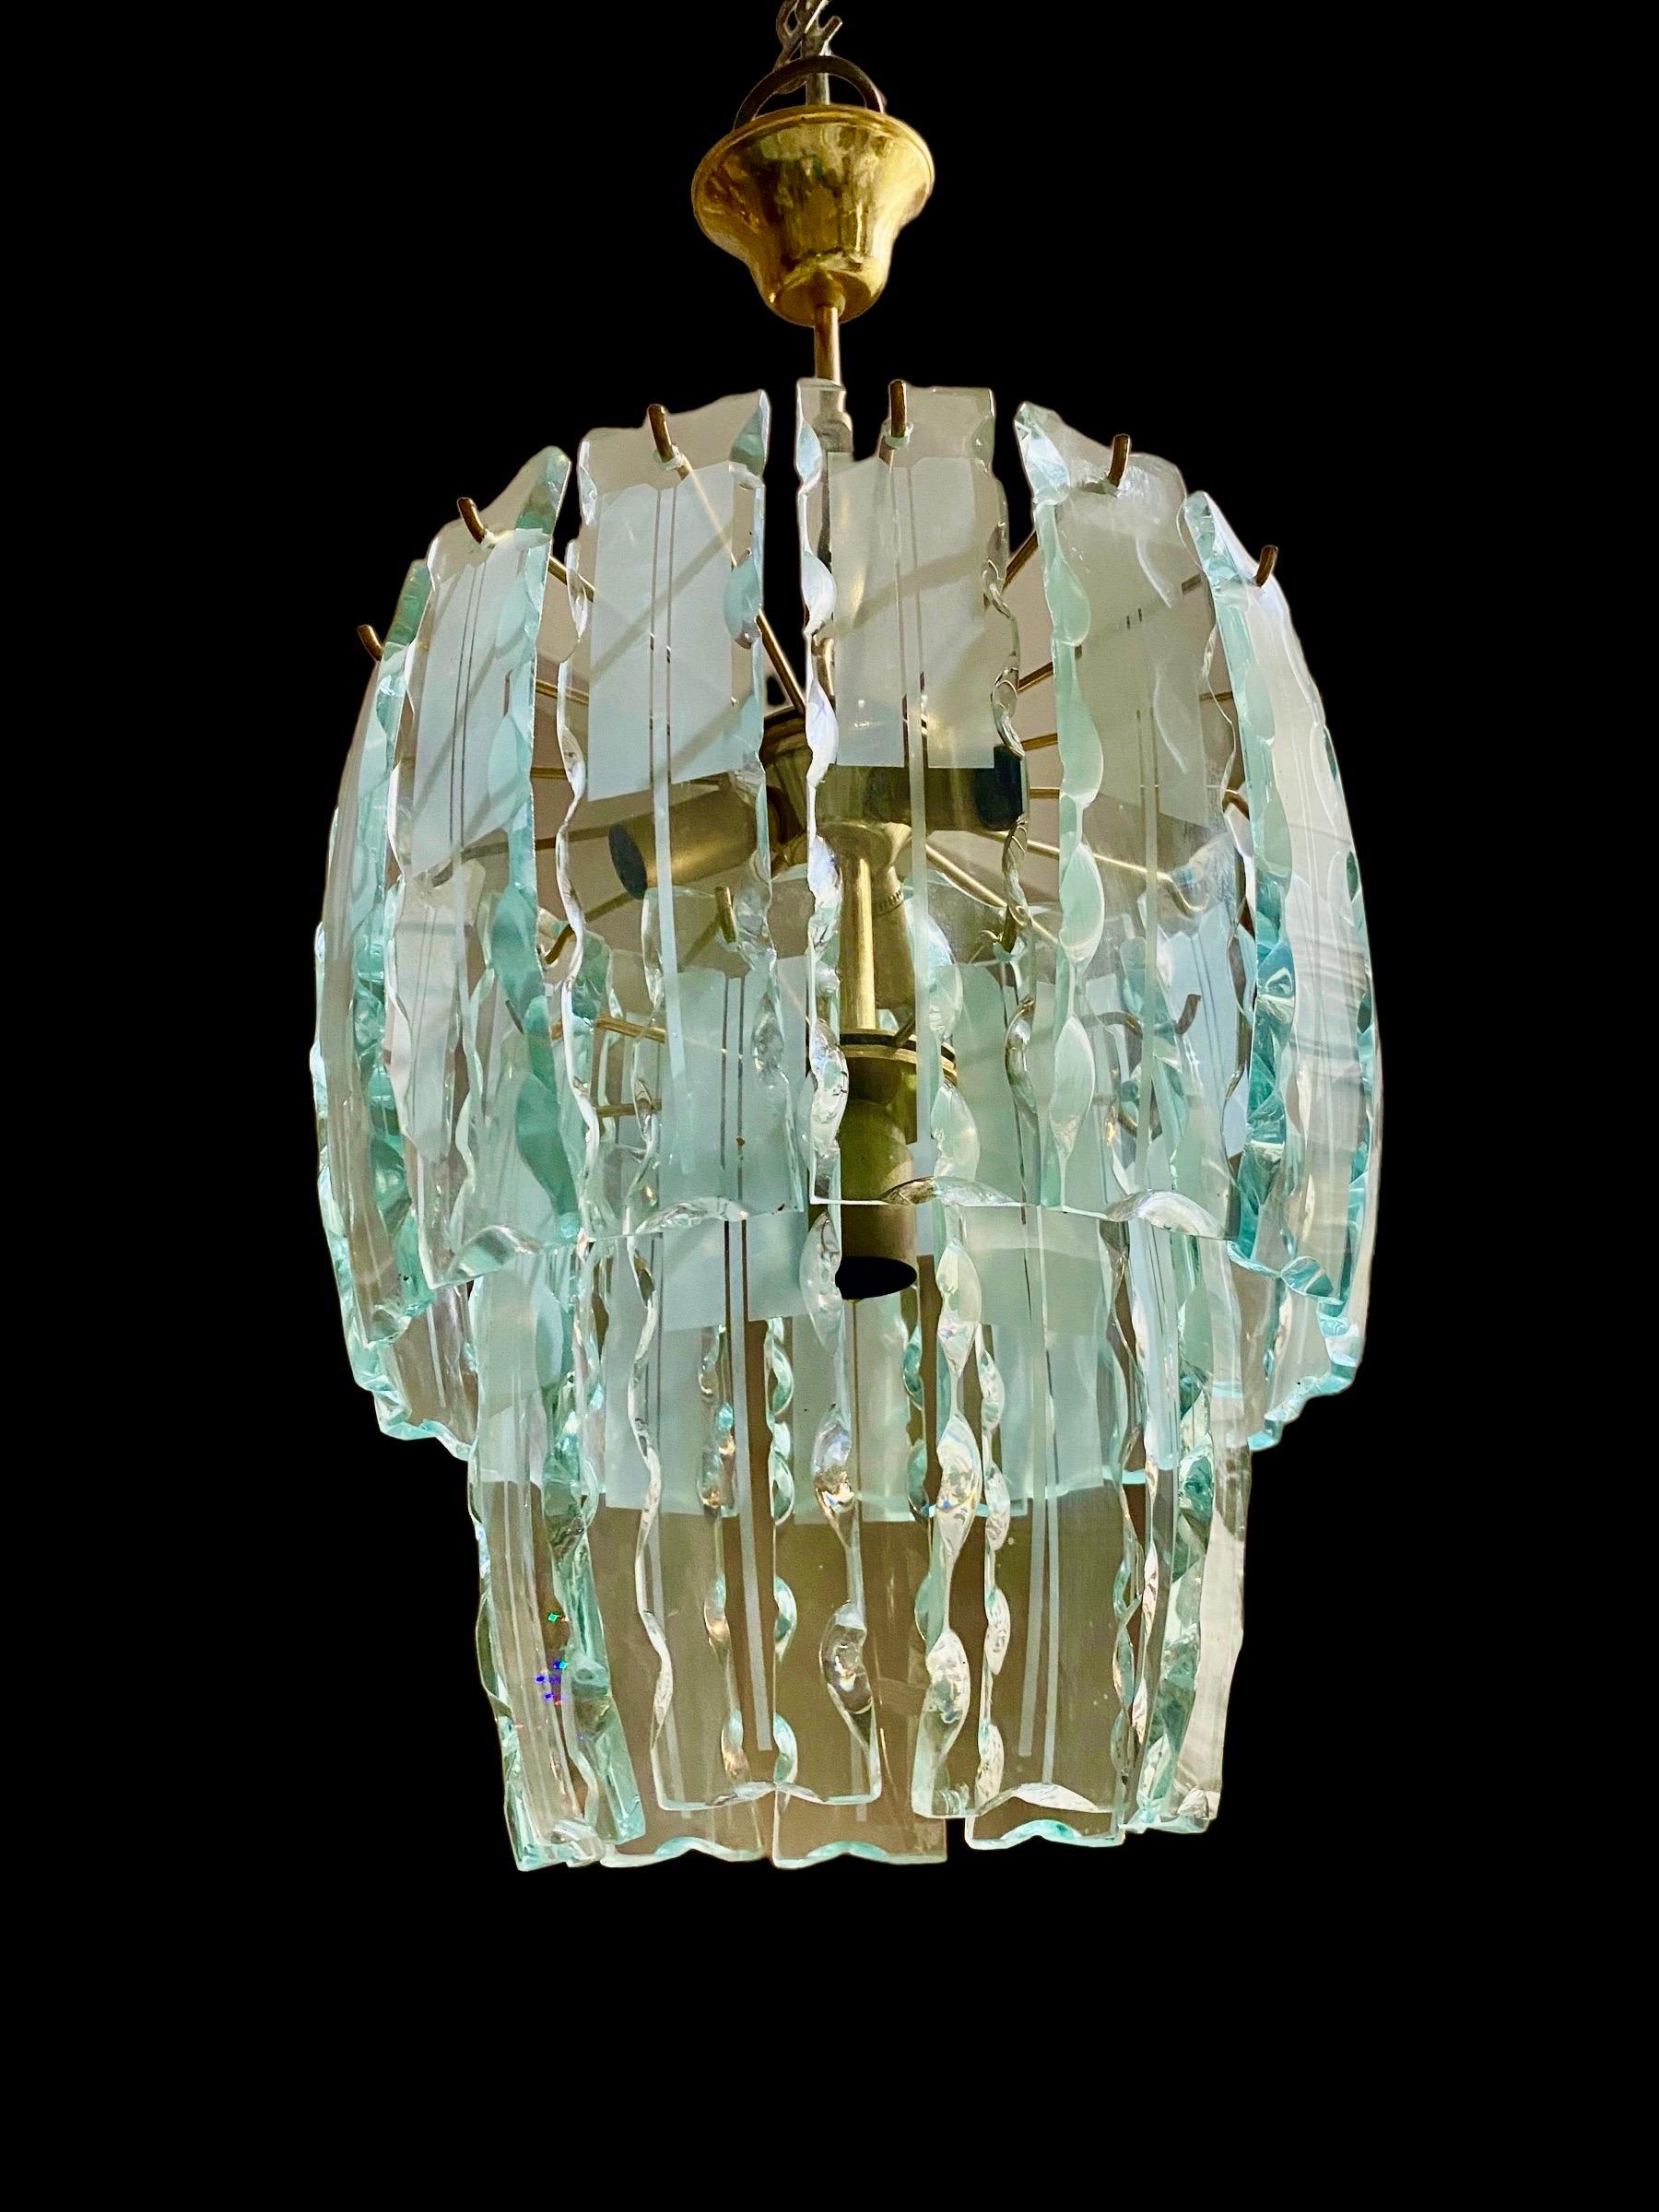 Zero Quattro Glas-Kronleuchter, Glas aus Murano in Glasdesign. Sehr seltenes Modell aus Glas mit mattierter Messingstruktur. Eine ikonische Lampe mit italienischem Design, ein einzigartiges Element für eine Atmosphäre von großem Luxus.

DISCOUNT